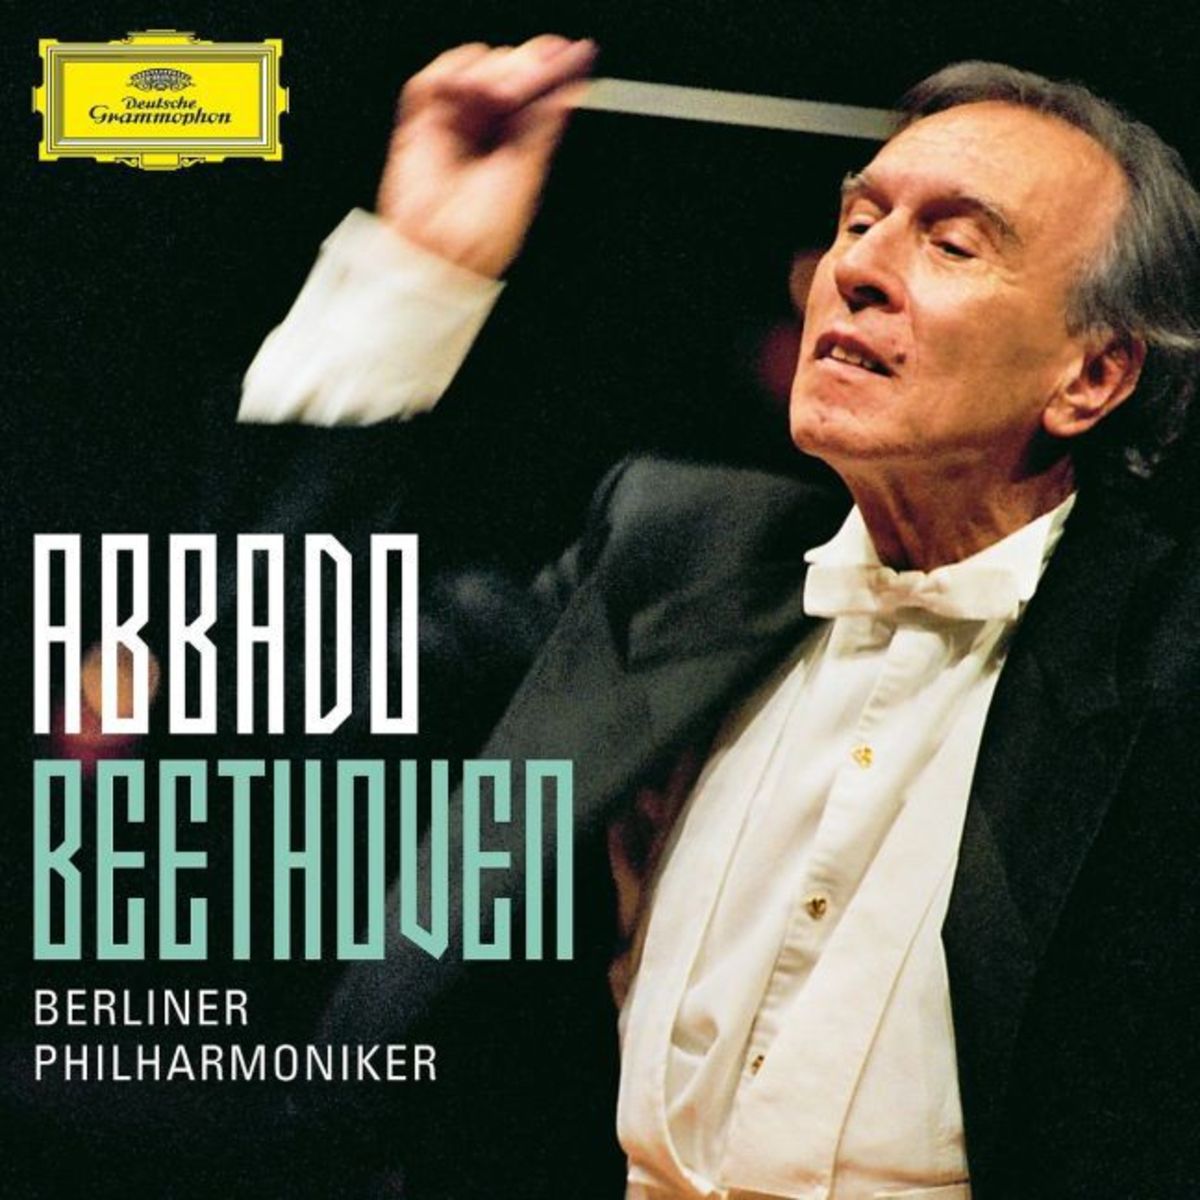 Beethoven (Abbado Symphony Edition)' von 'Claudio Abbado' auf 'CD